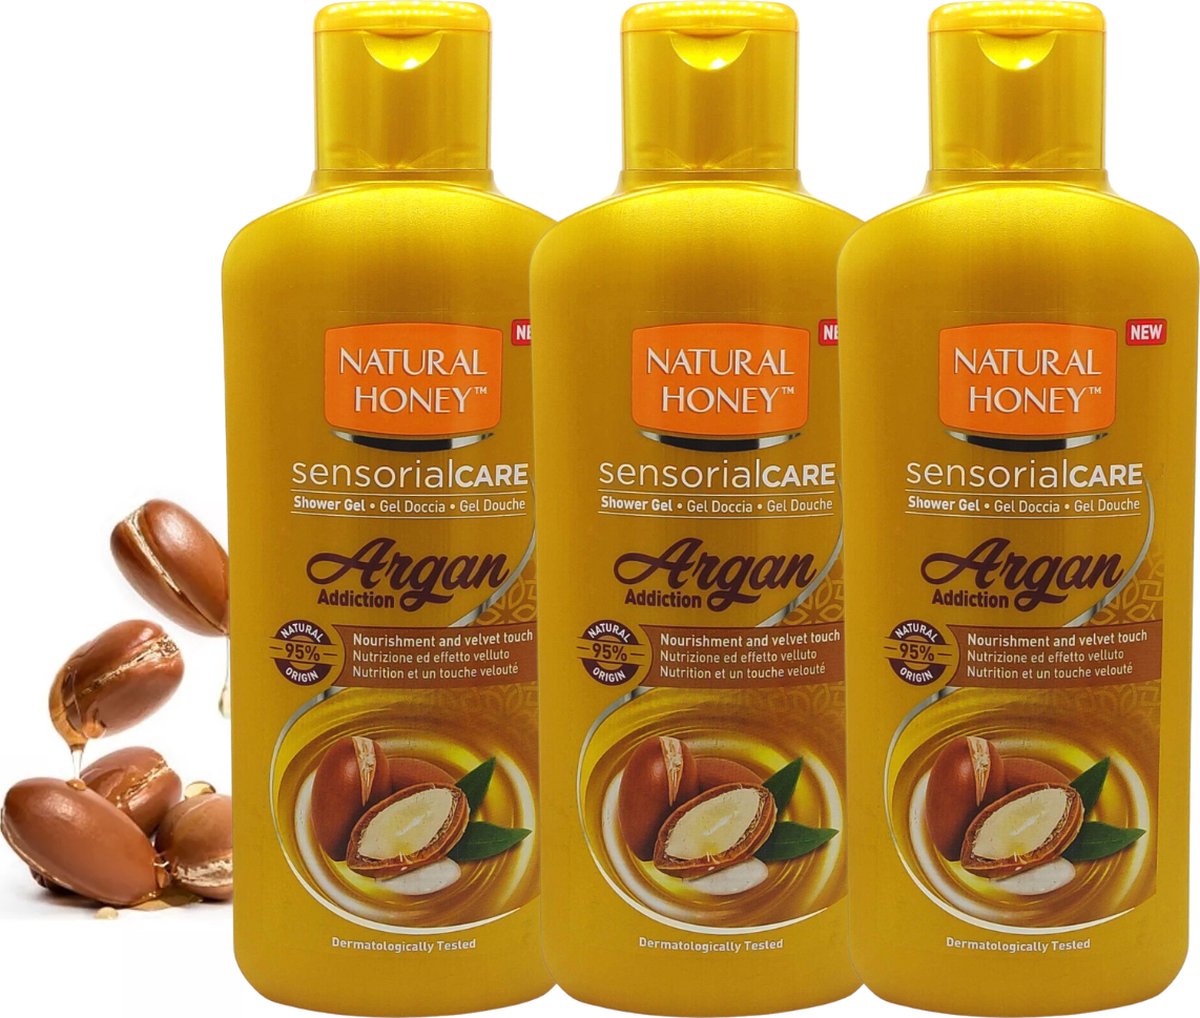 Natural Honey Sensorial Care Douchegel Argan Addiction - 3 x 650 ml - Douchegel Voordeelverpakking - Shower gel